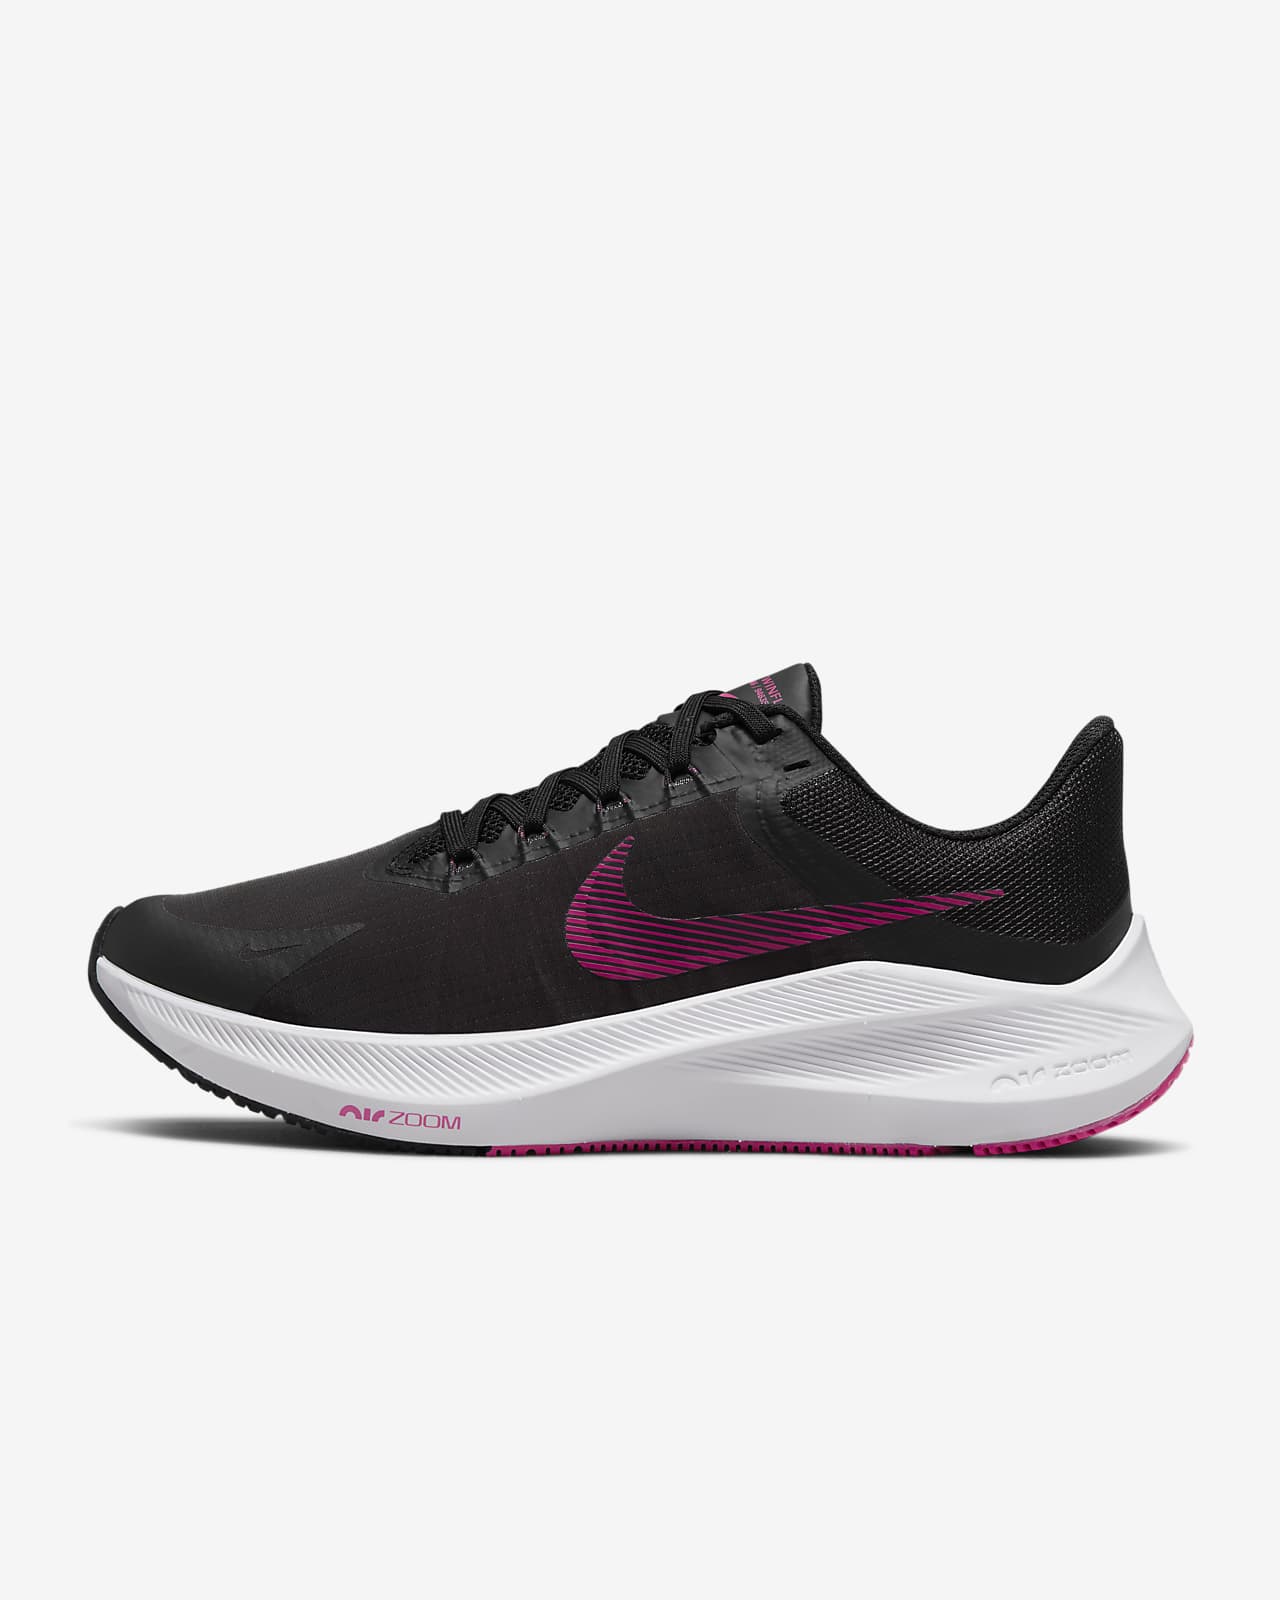 Nike Winflo 8 Women's Road Running Shoes